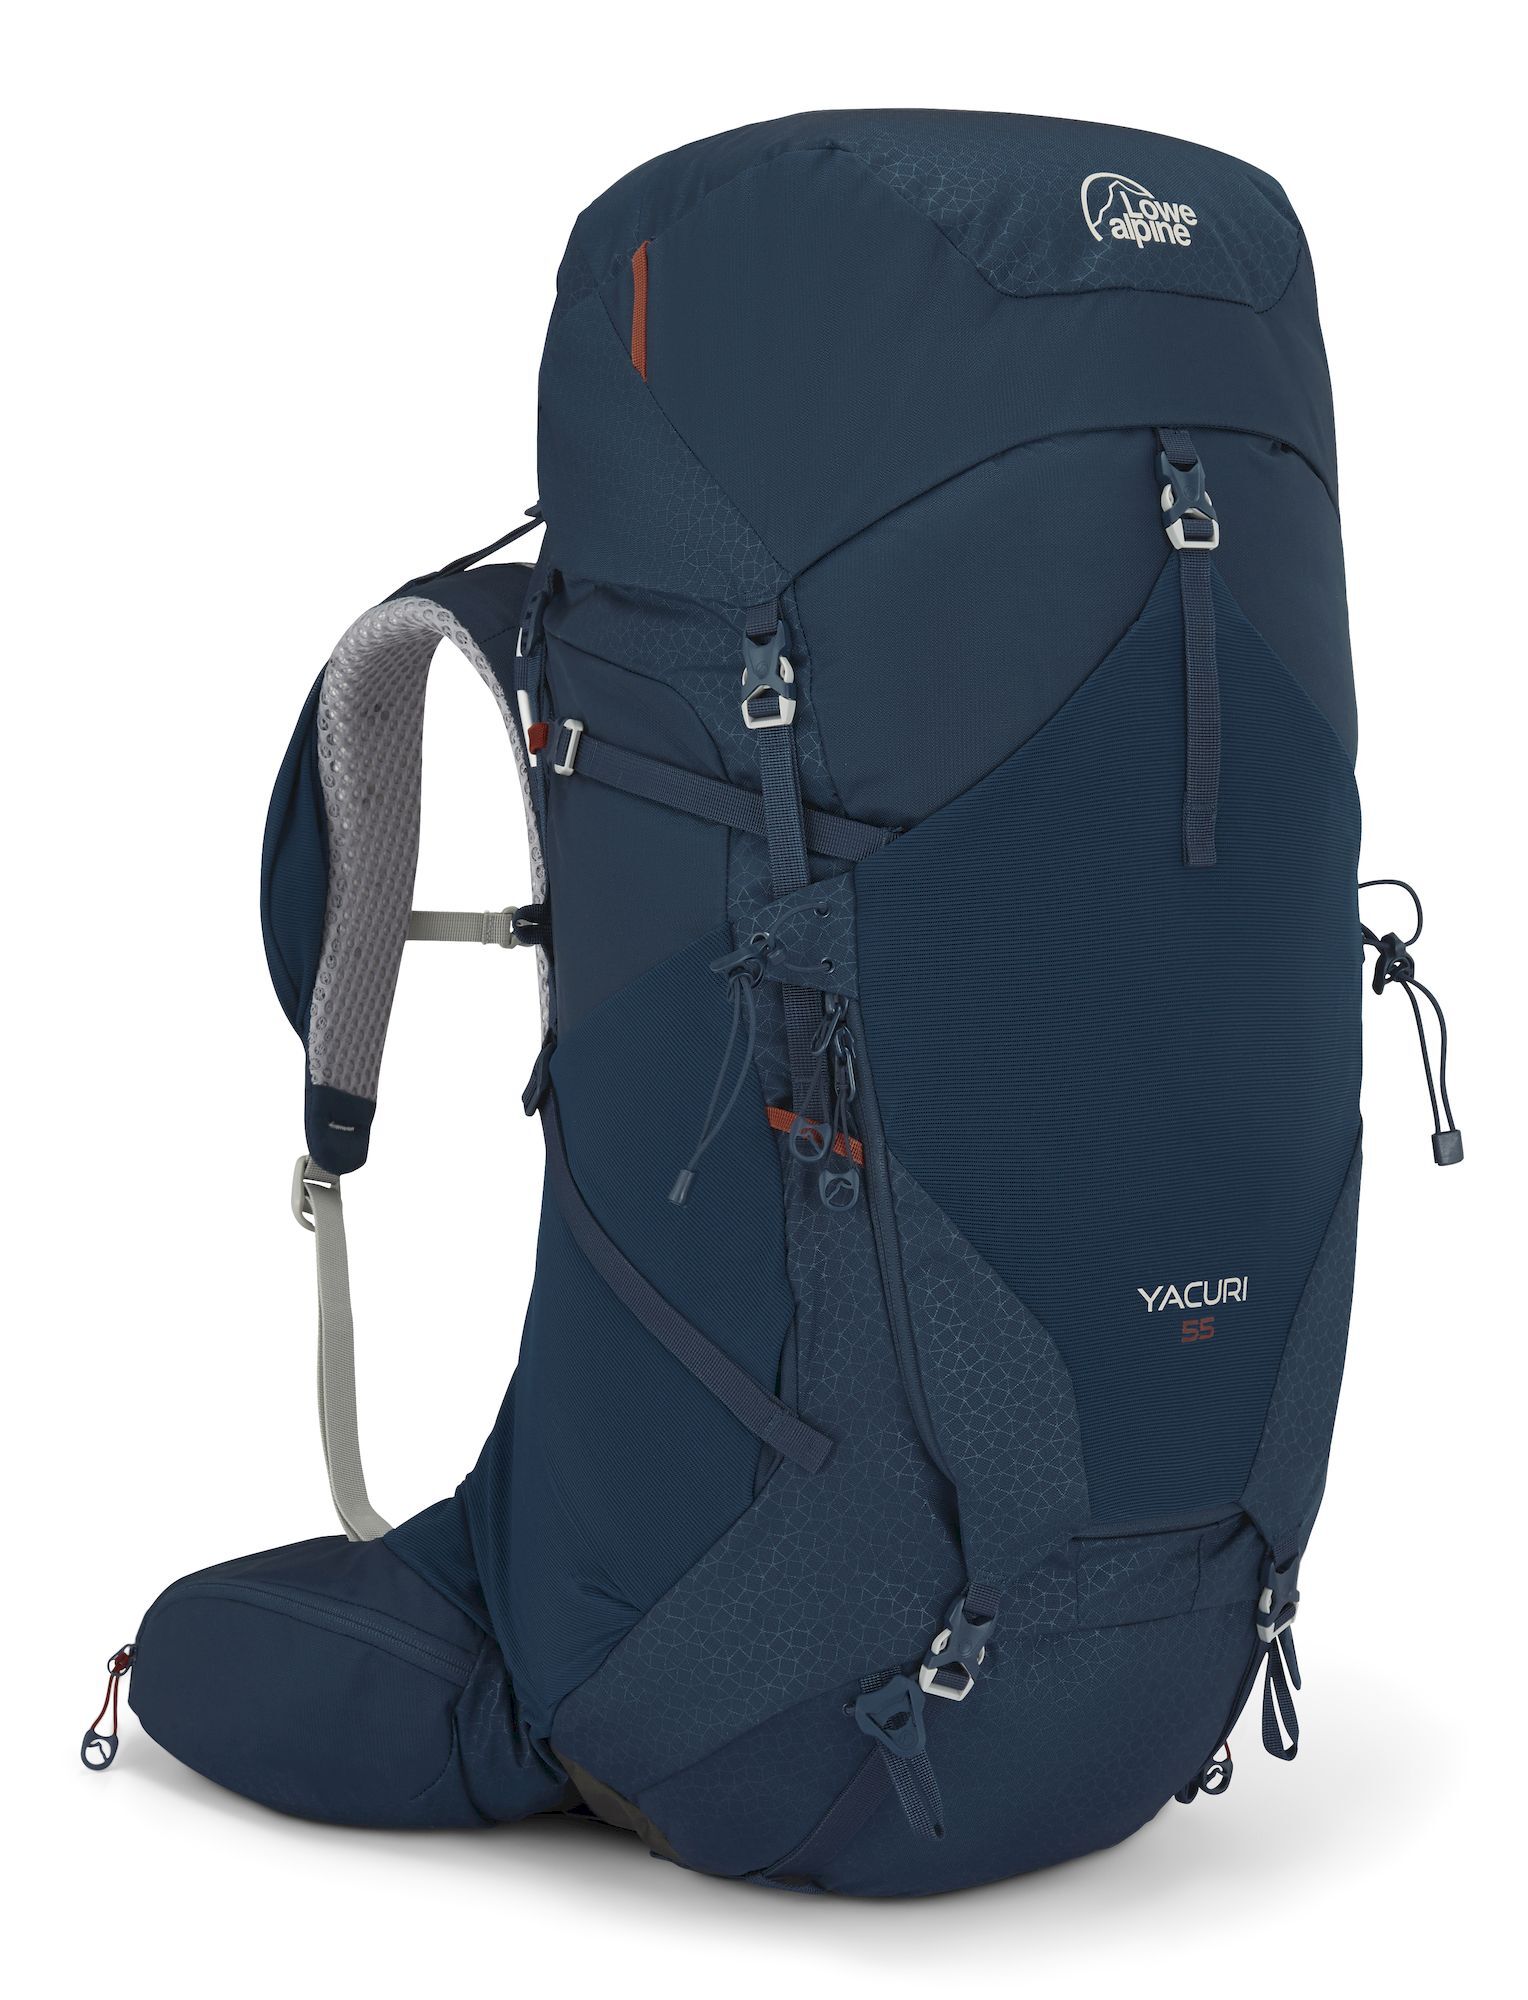 Lowe Alpine Yacuri 55 - Hiking backpack - Men's | Hardloop